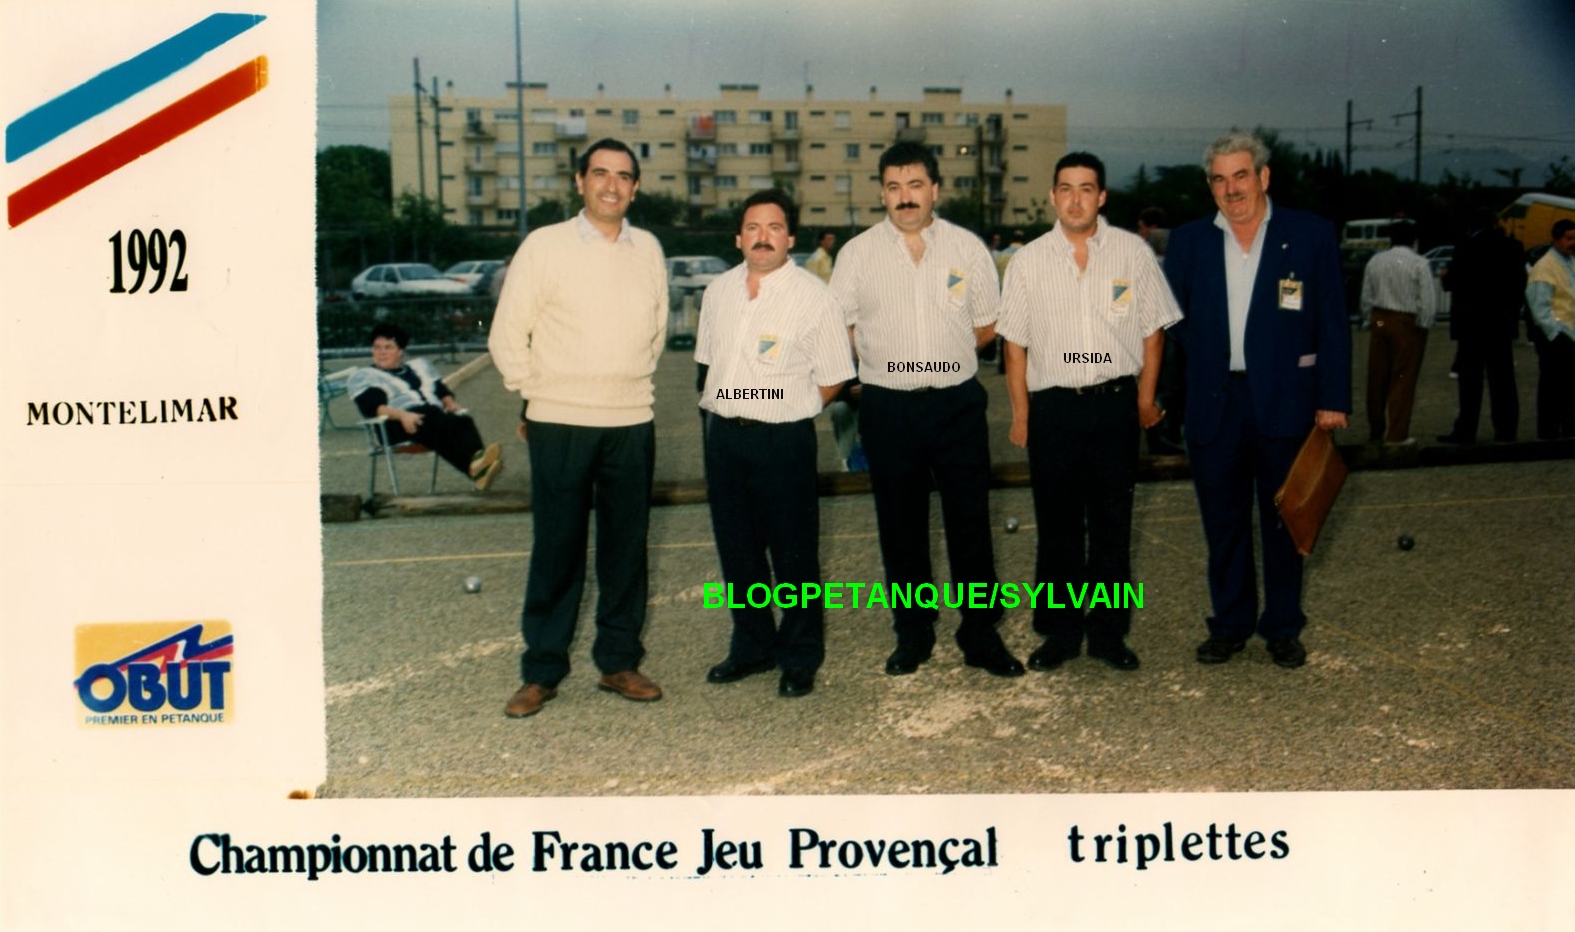 L'année 1992 au Jeu Provençal